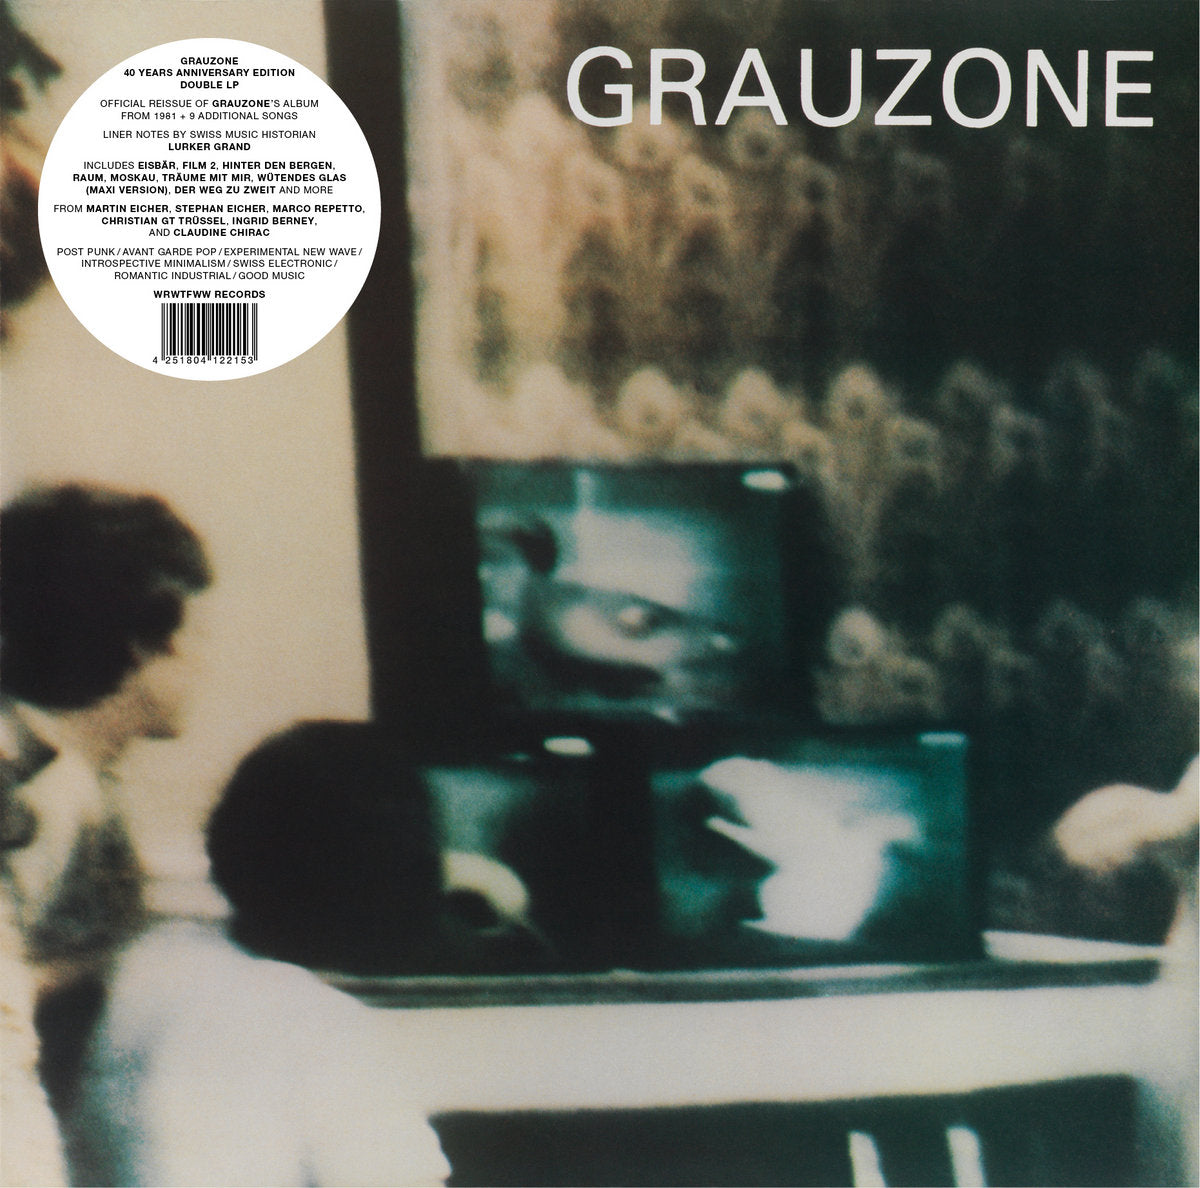 GRAUZONE - Grauzone (40 Years Anniversary Edition) - 2LP - Vinyl